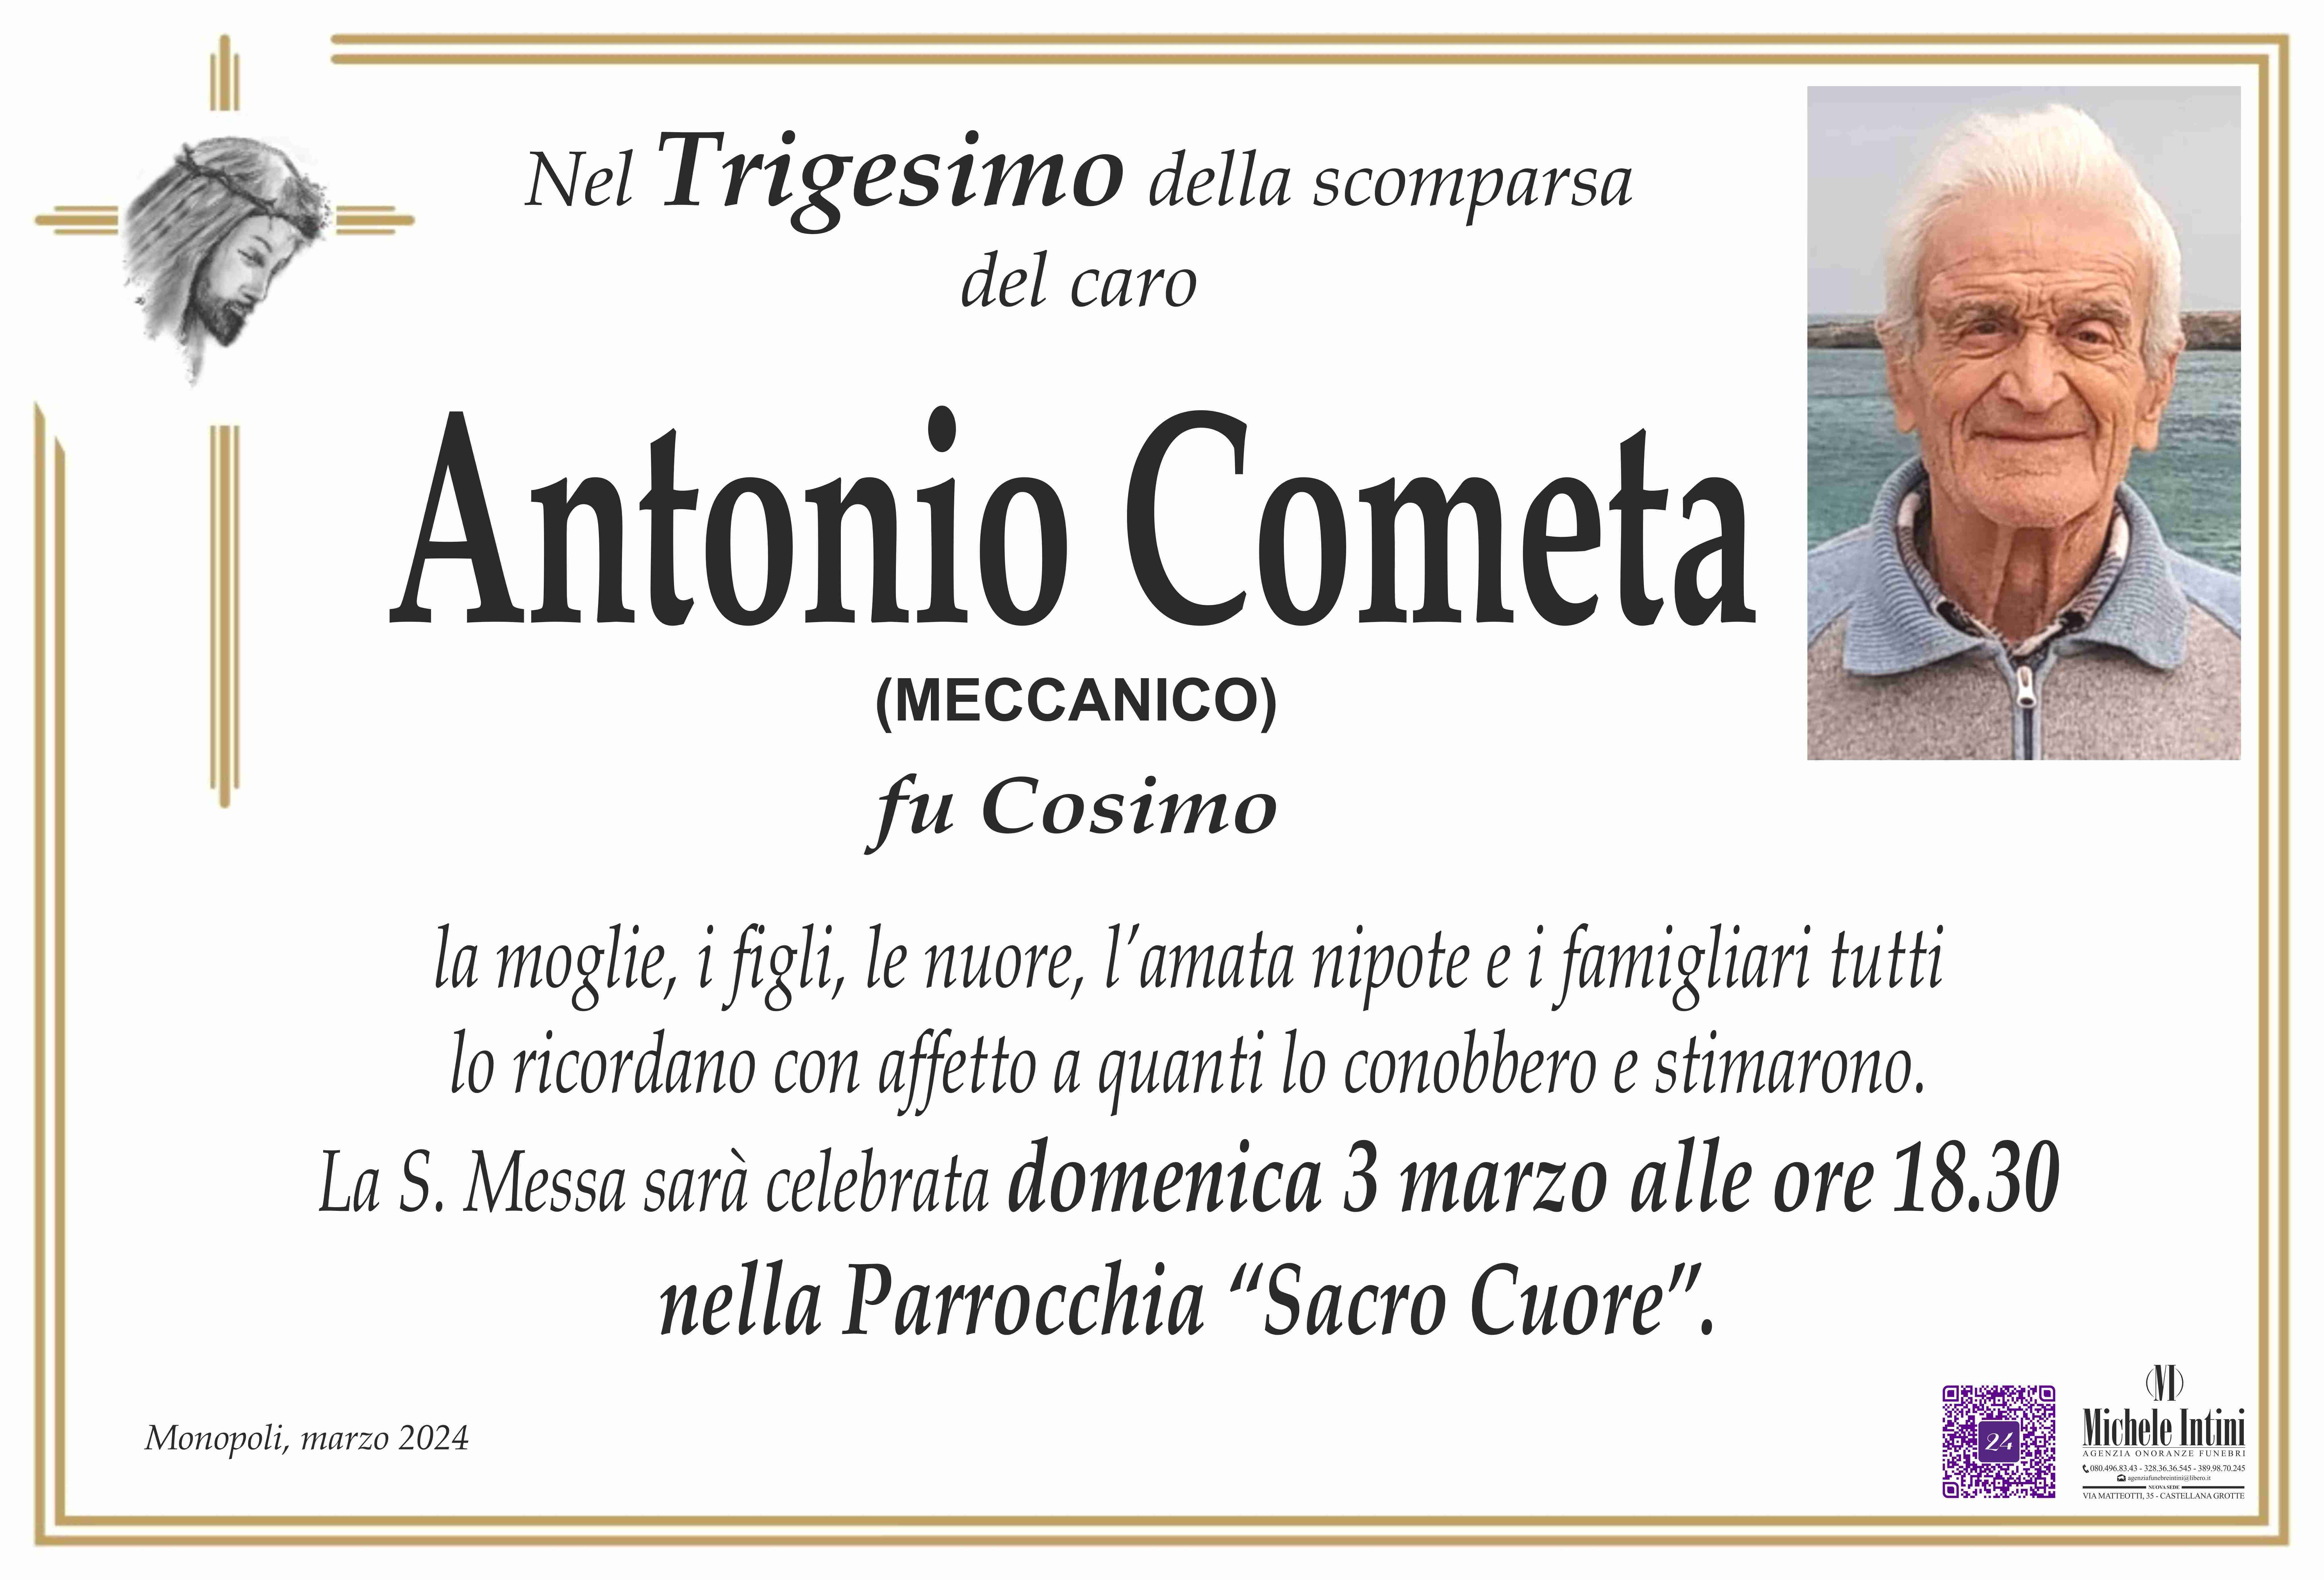 Antonio Cometa